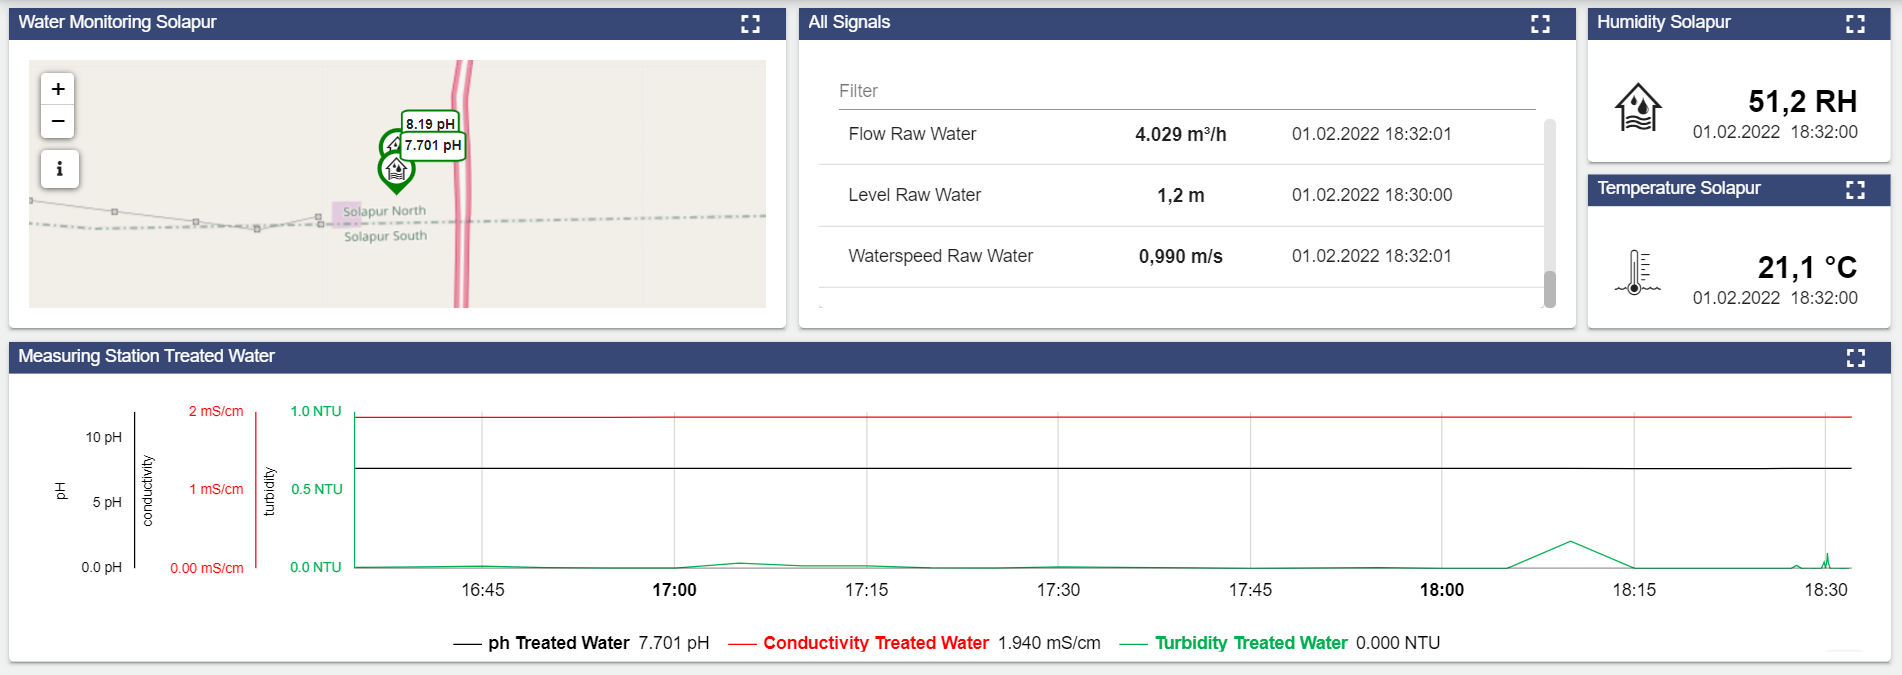 Monitoring Dashboard beim indischen Trinkwasserwerk in Solapur: Daten zu Durchfluss und Qualitätsparametern können jederzeit über das Portal der deutschen Partner eingesehen werden.